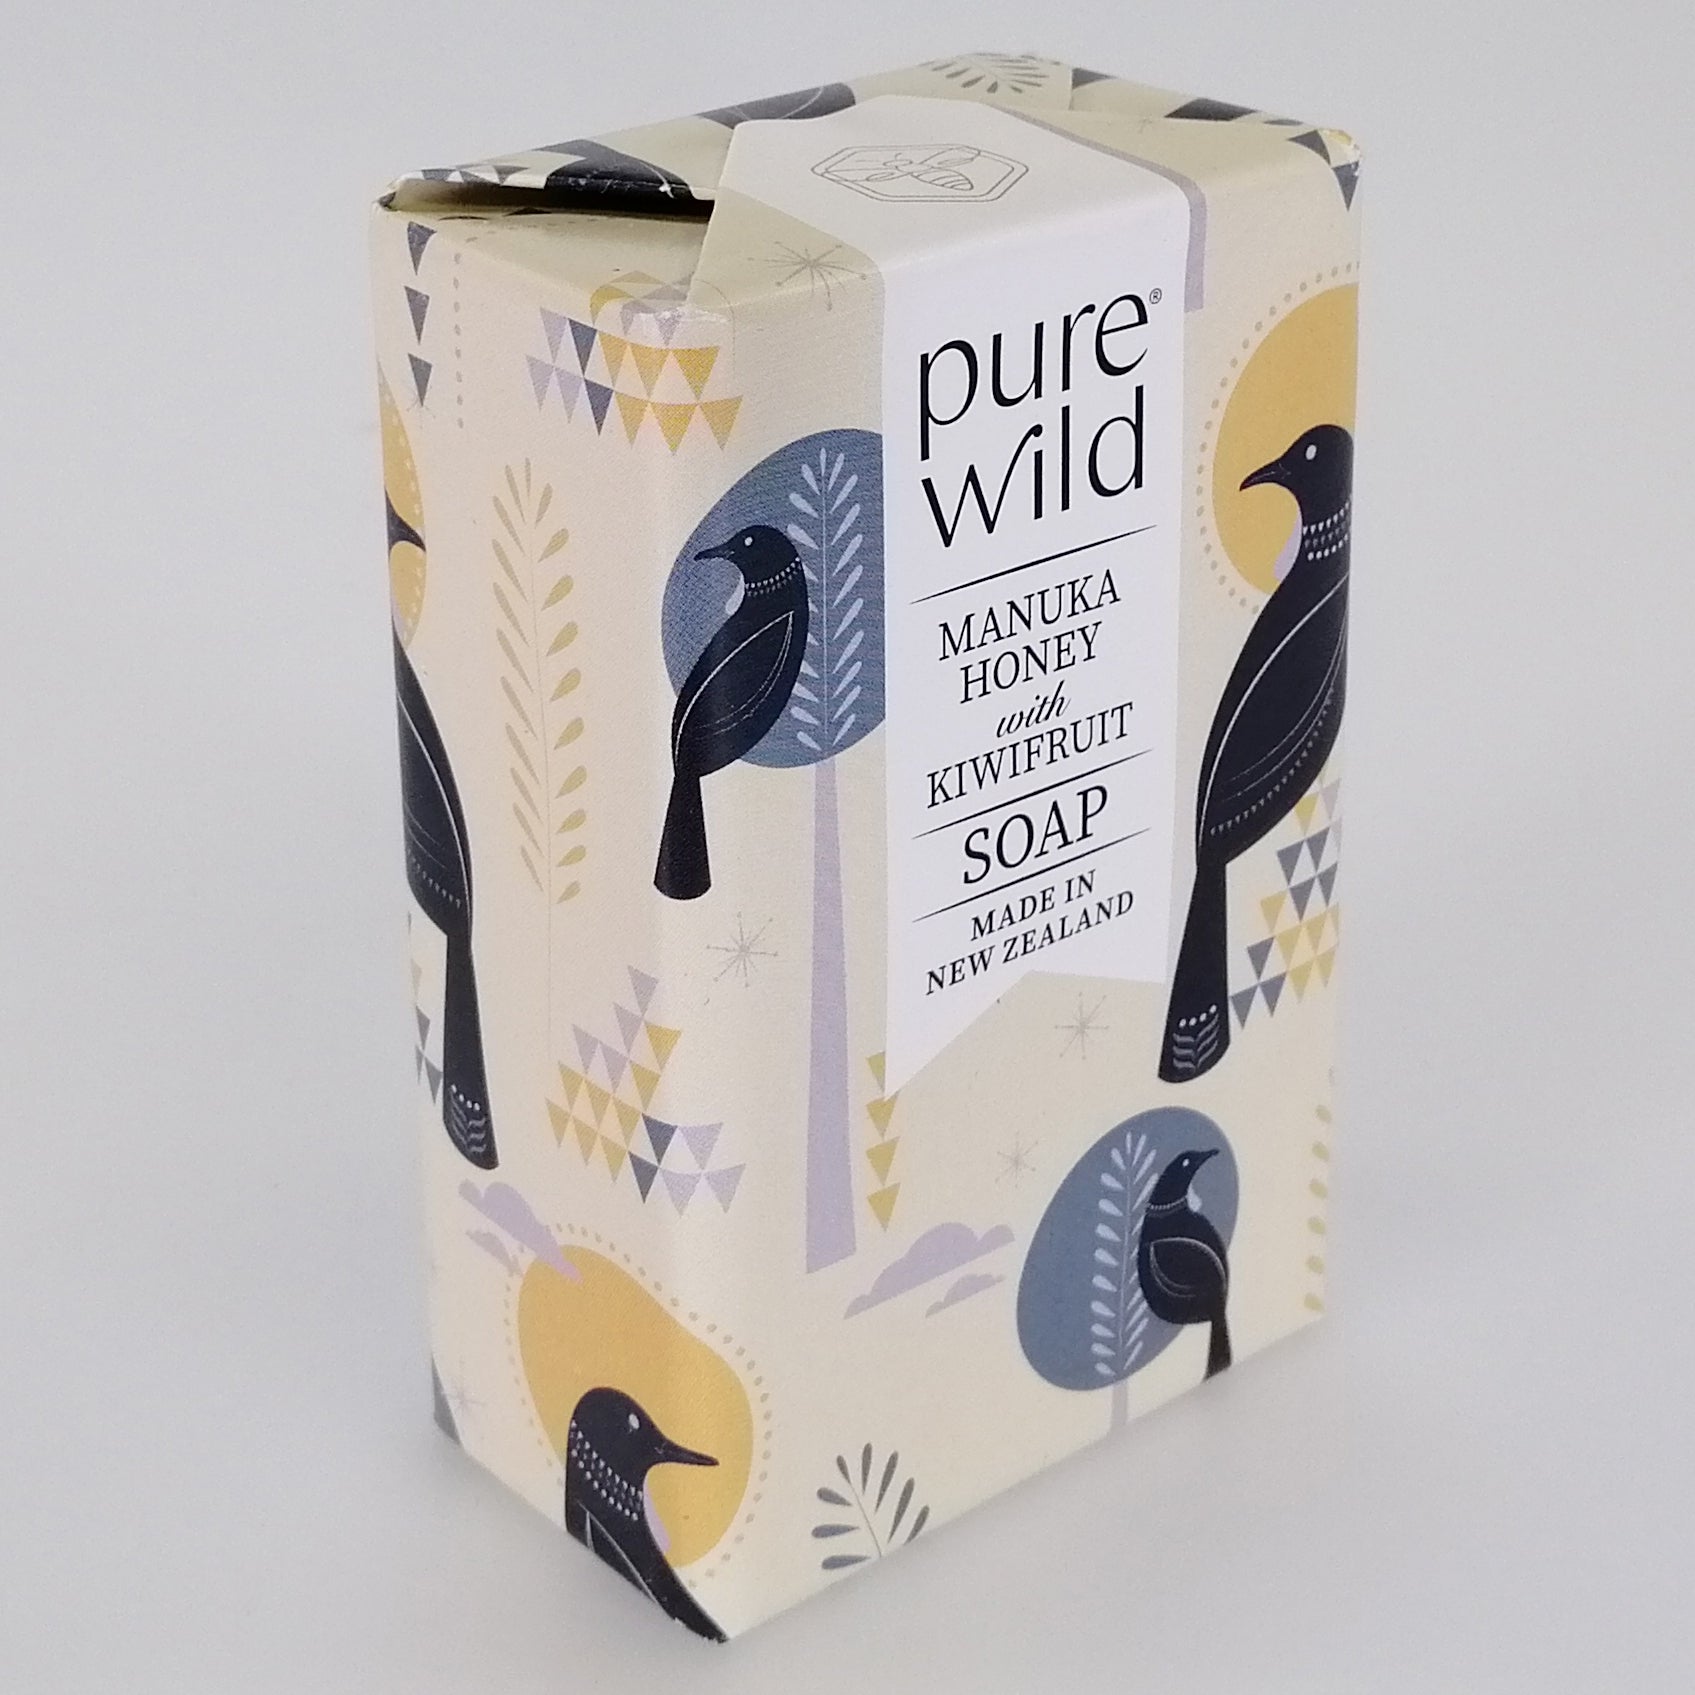 Purewild Manuka Honey & Kiwifruit Soap - Tui